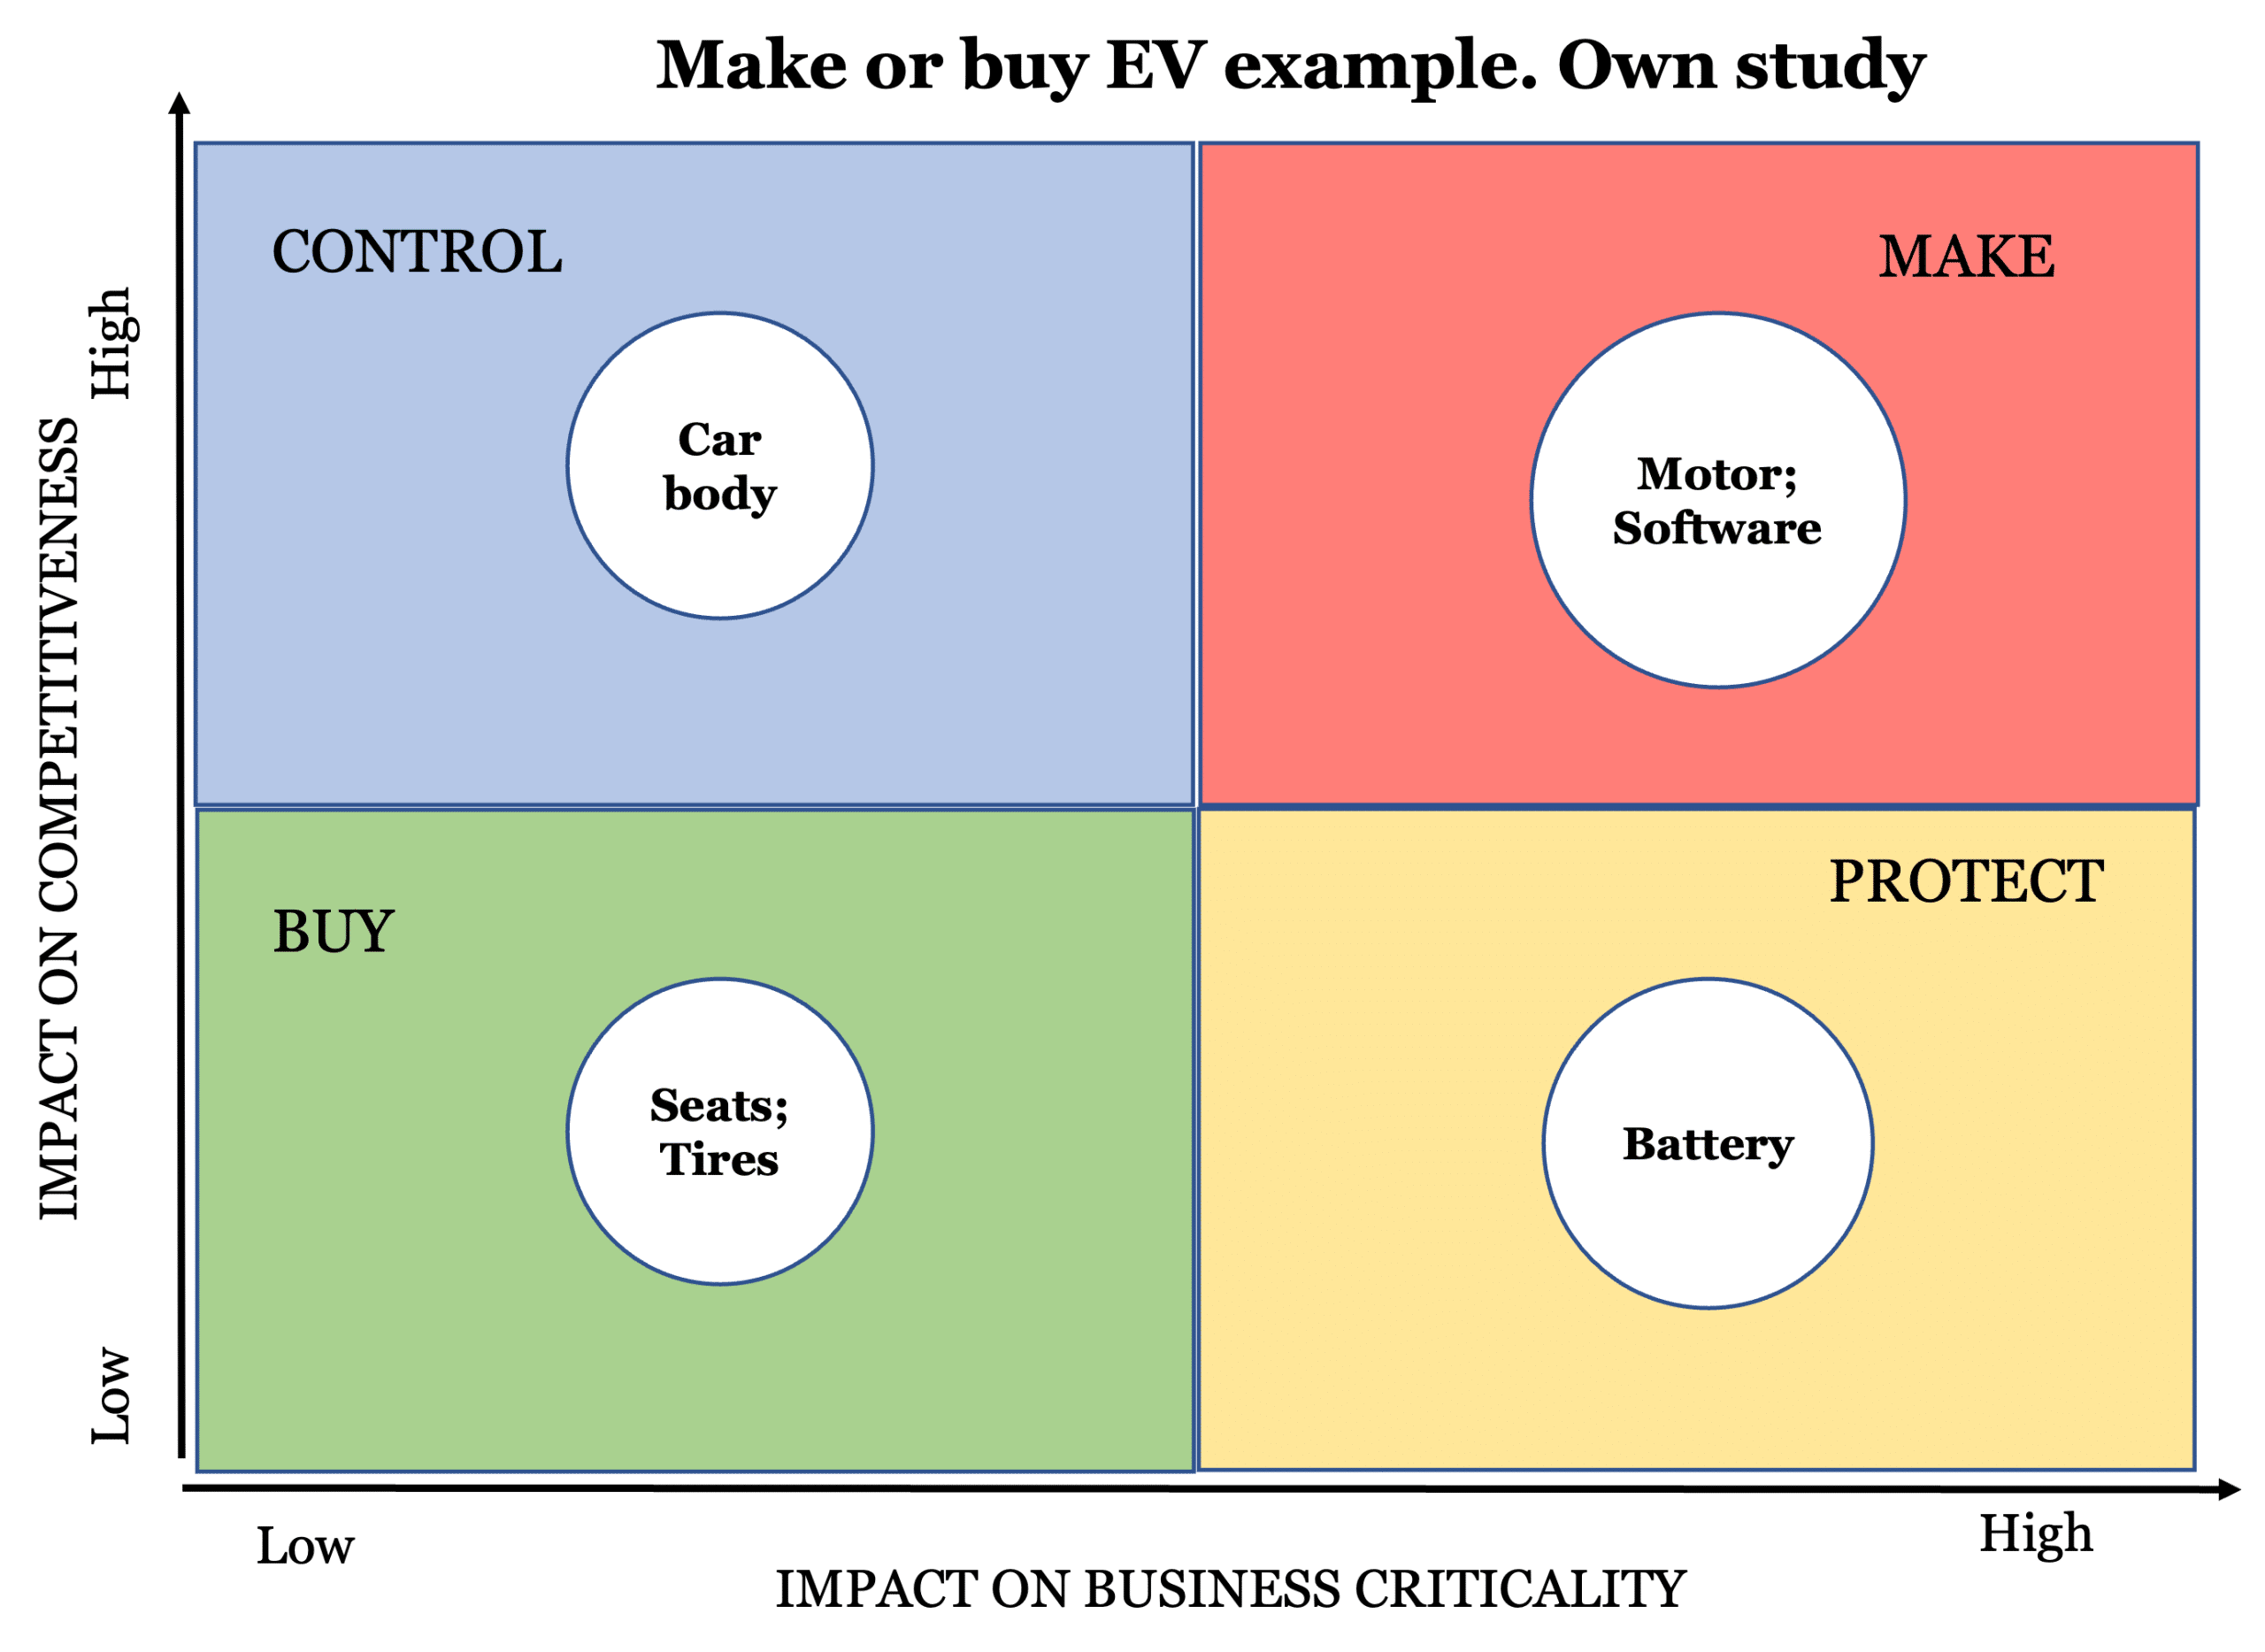 Make or buy for EV automotive